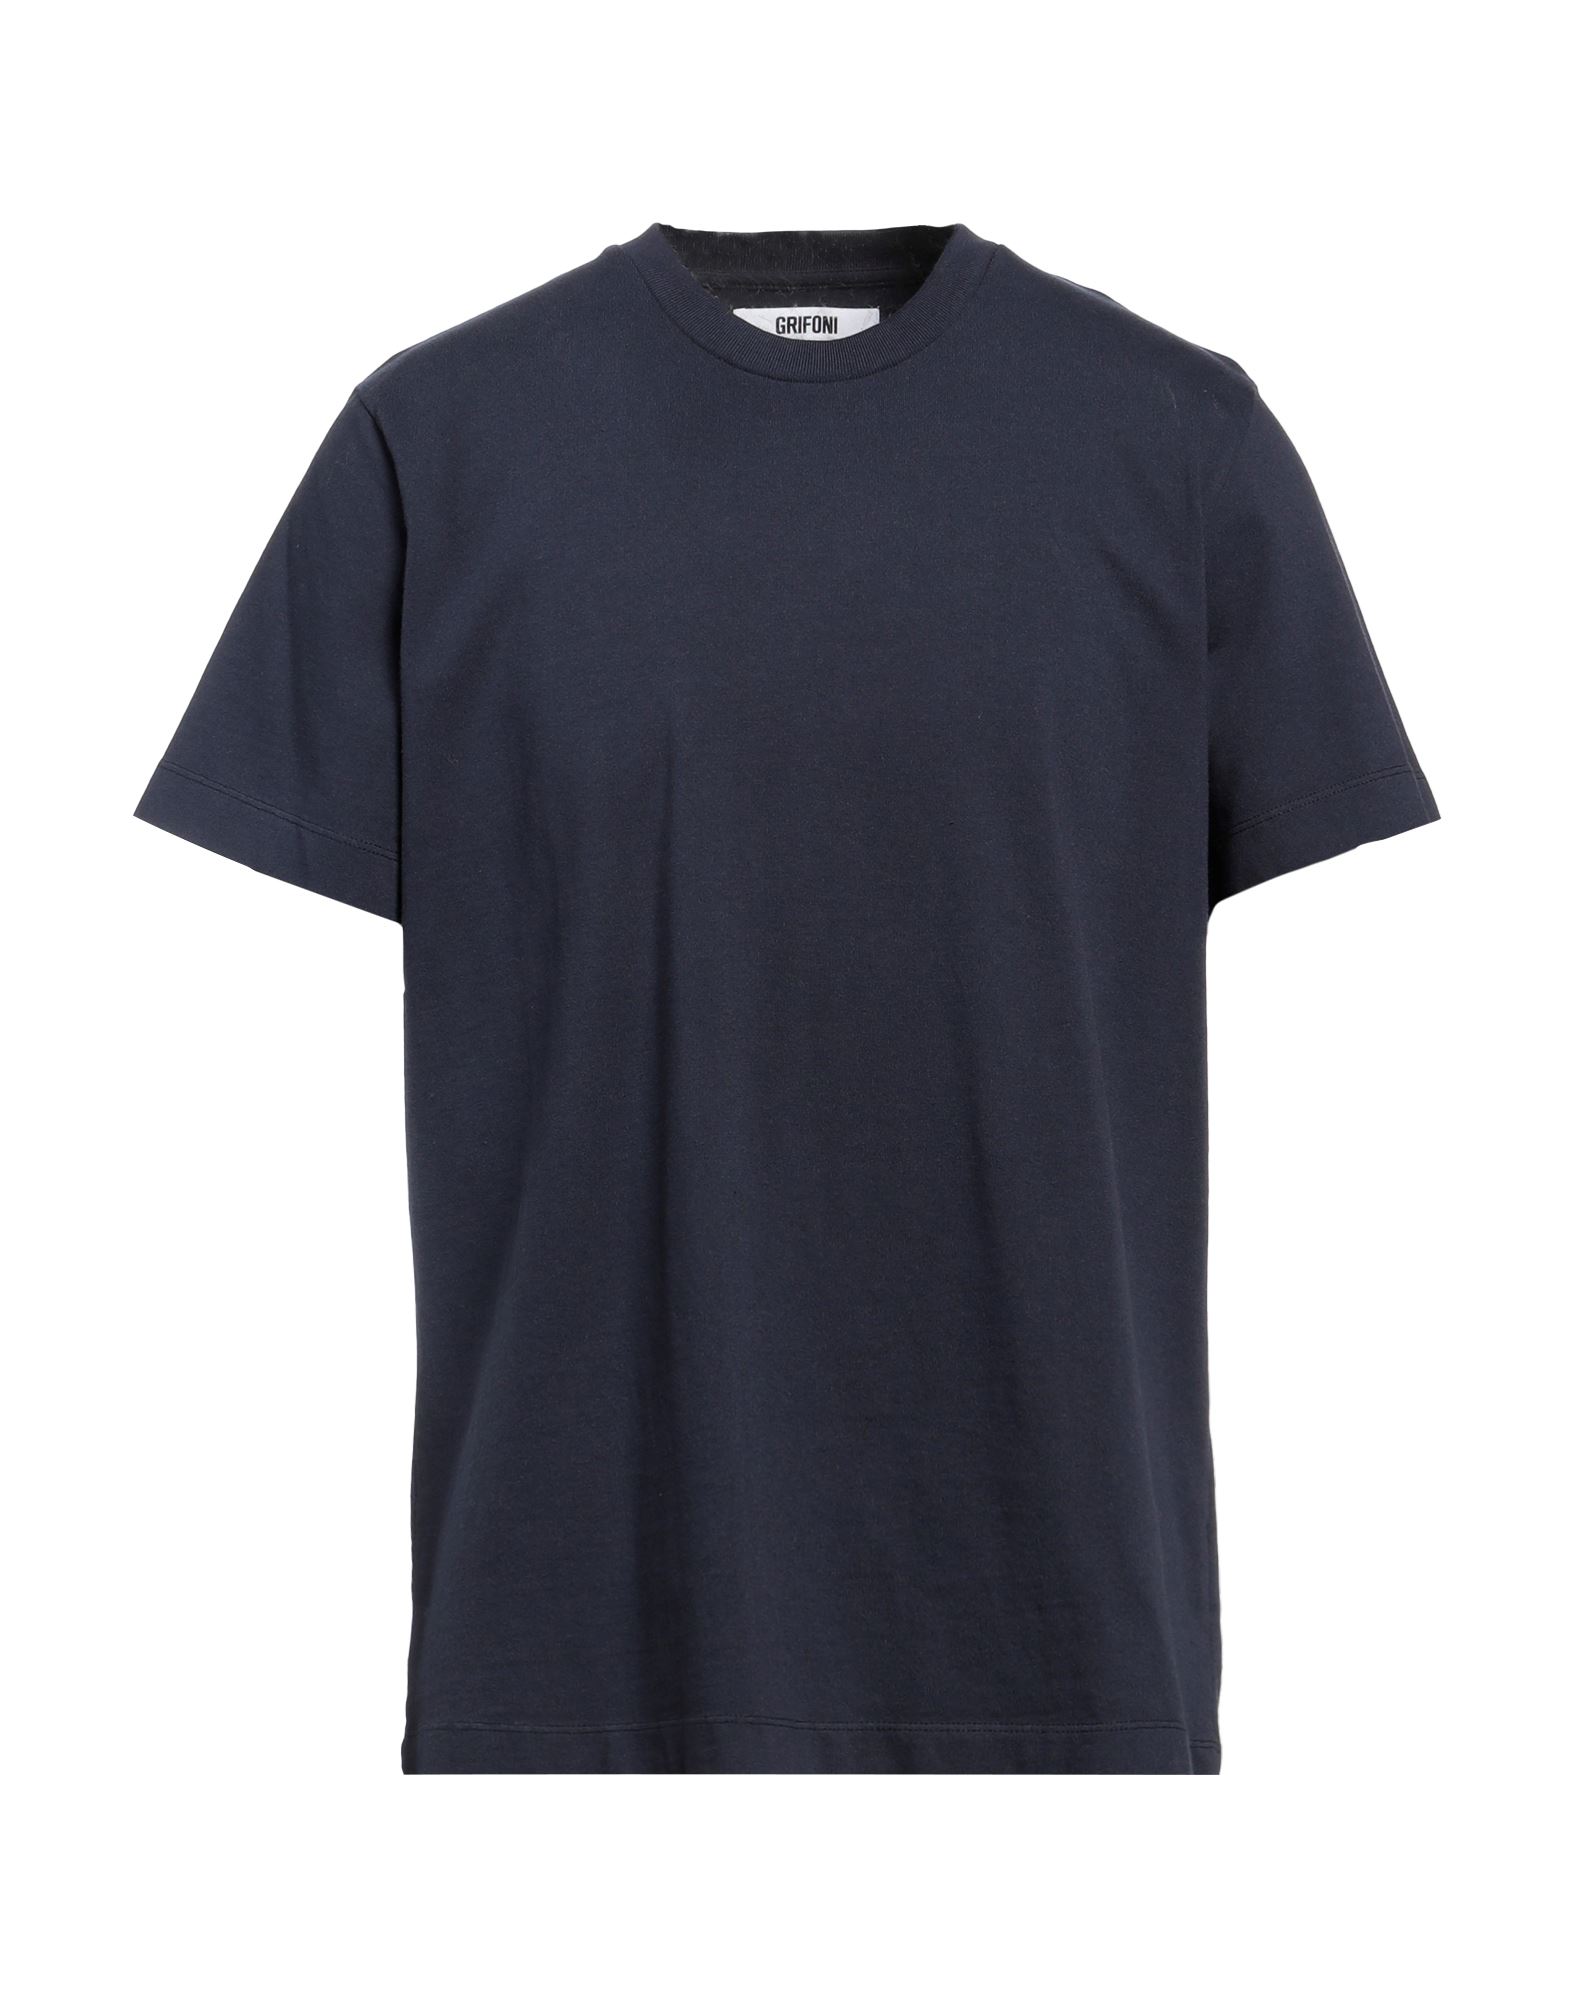 GRIFONI T-shirts Herren Marineblau von GRIFONI